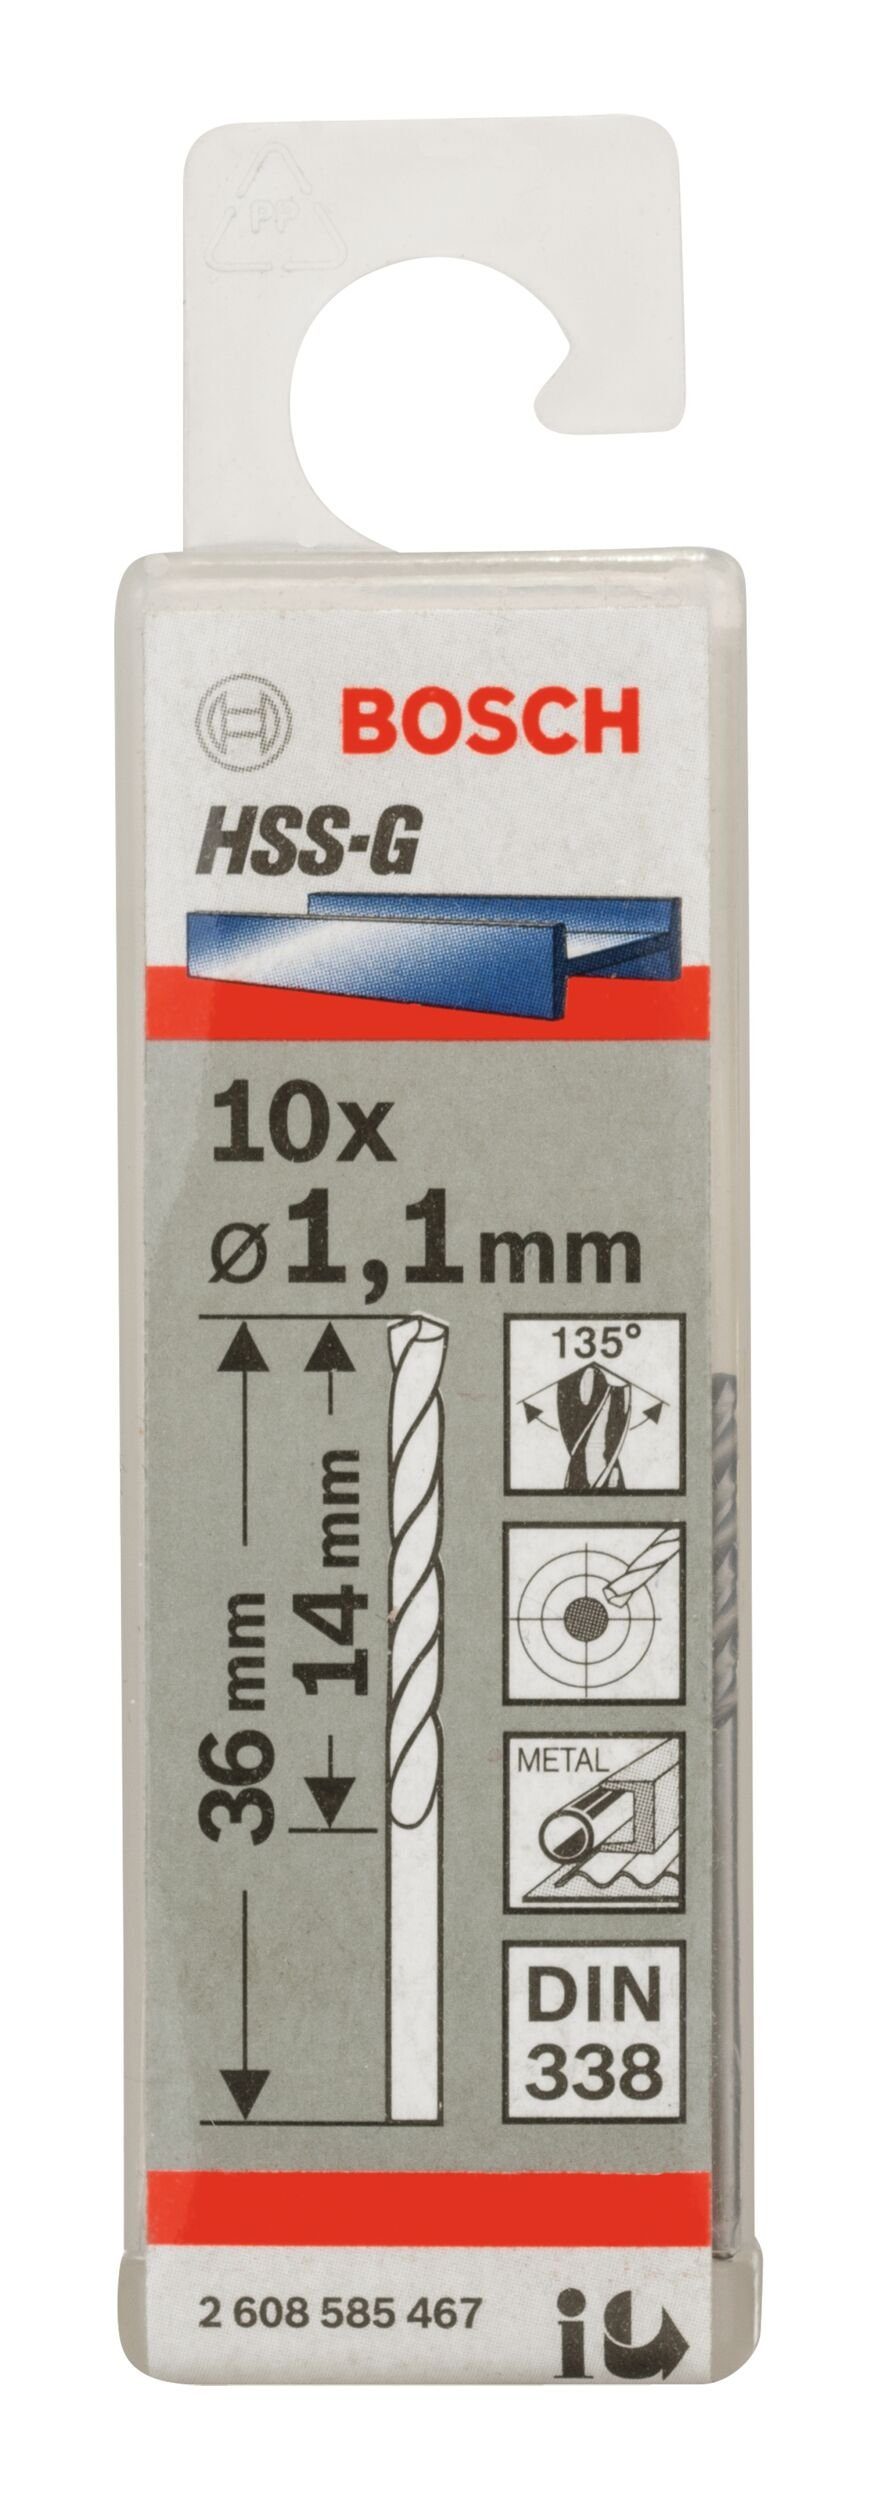 mm x - Metallbohrer, 338) 14 1,1 HSS-G (DIN 36 10er-Pack Stück), - BOSCH x (10